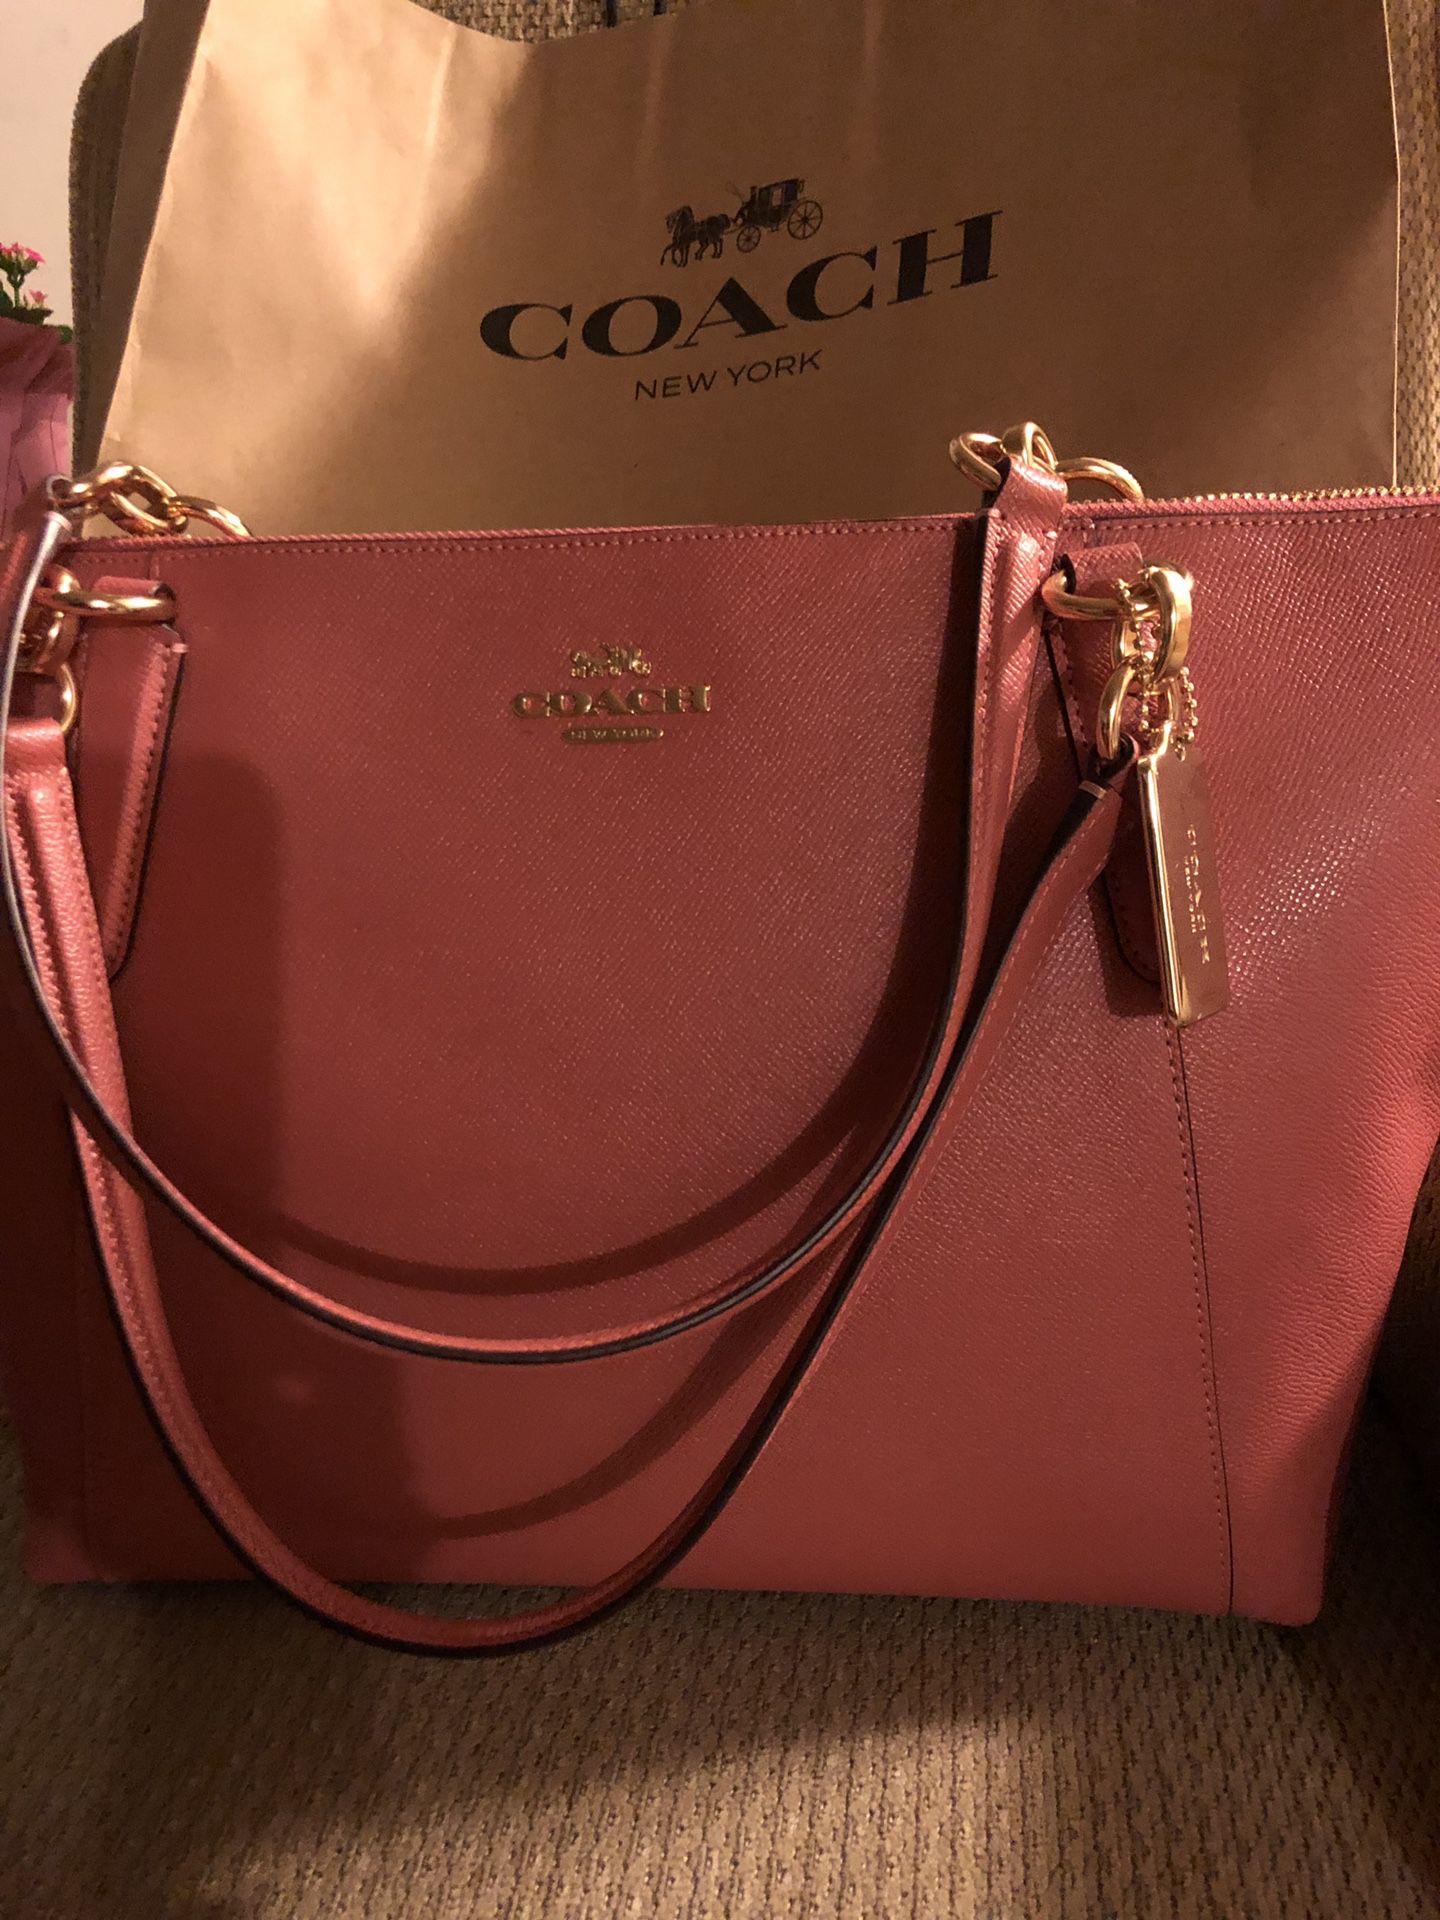 New Original Coach handbag with tags